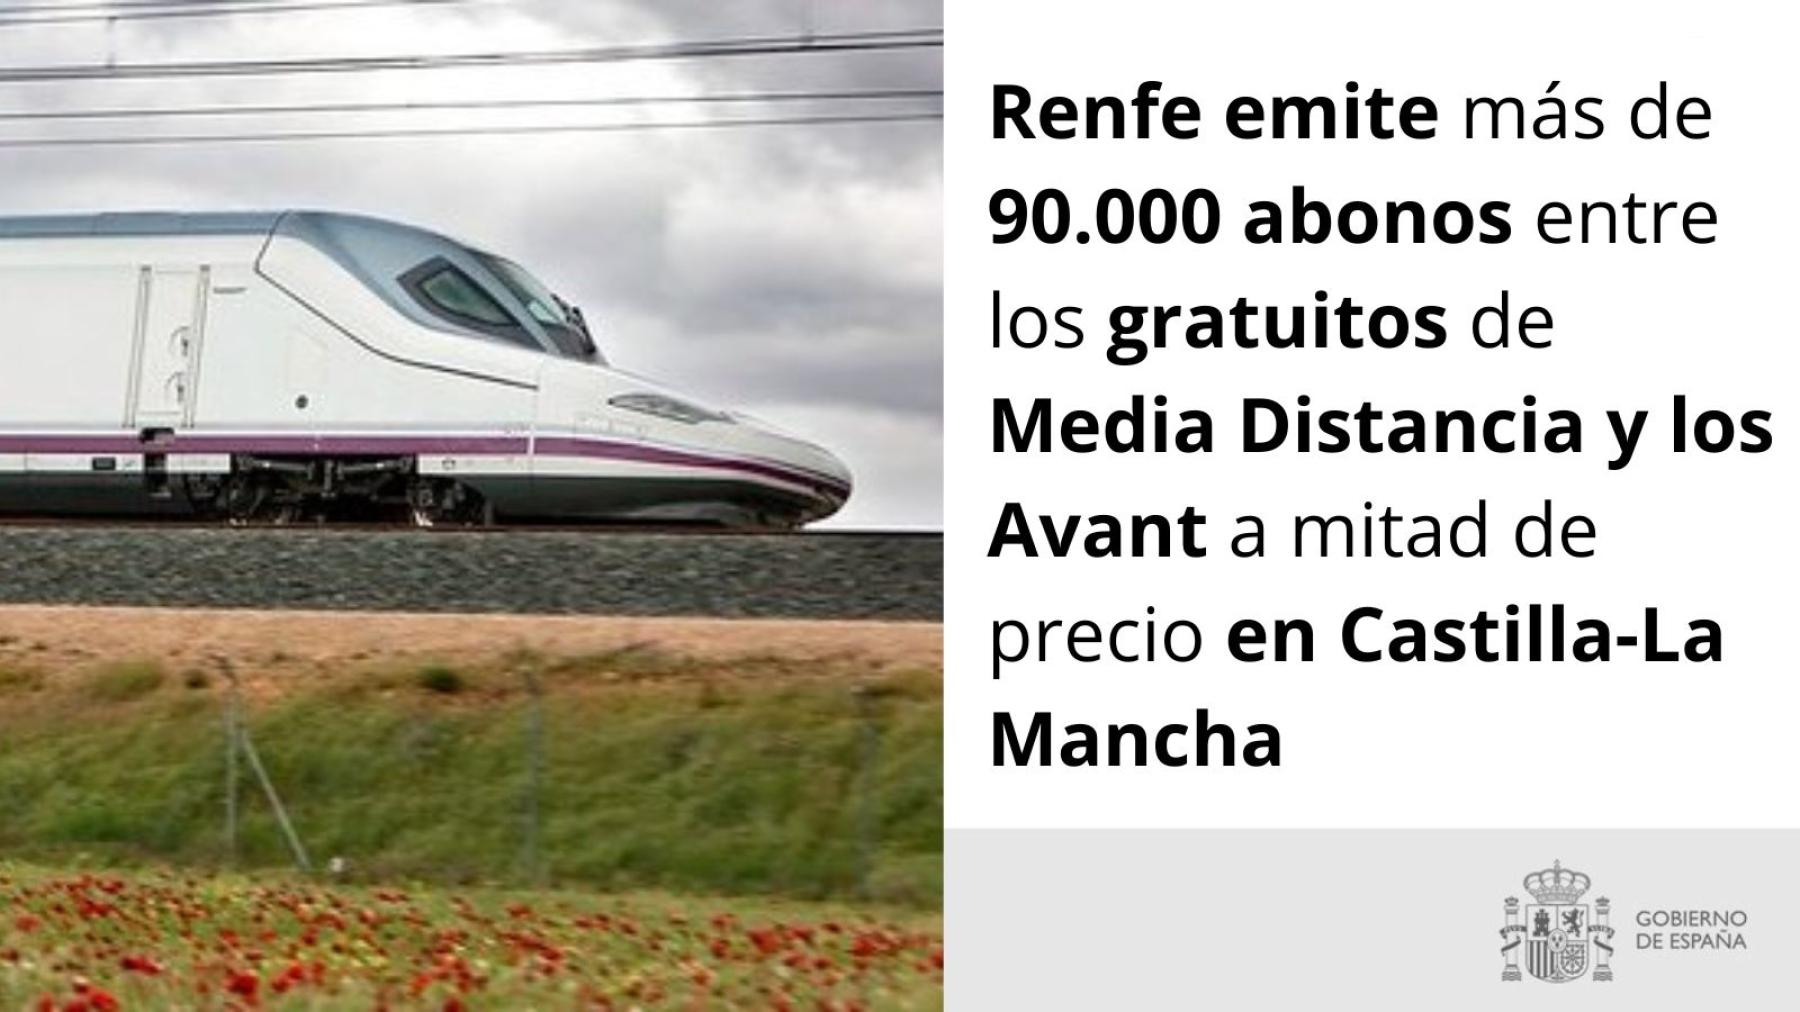 Renfe emite más de 90.000 abonos entre los gratuitos de Media Distancia y los Avant a mitad de precio en Castilla-La Mancha